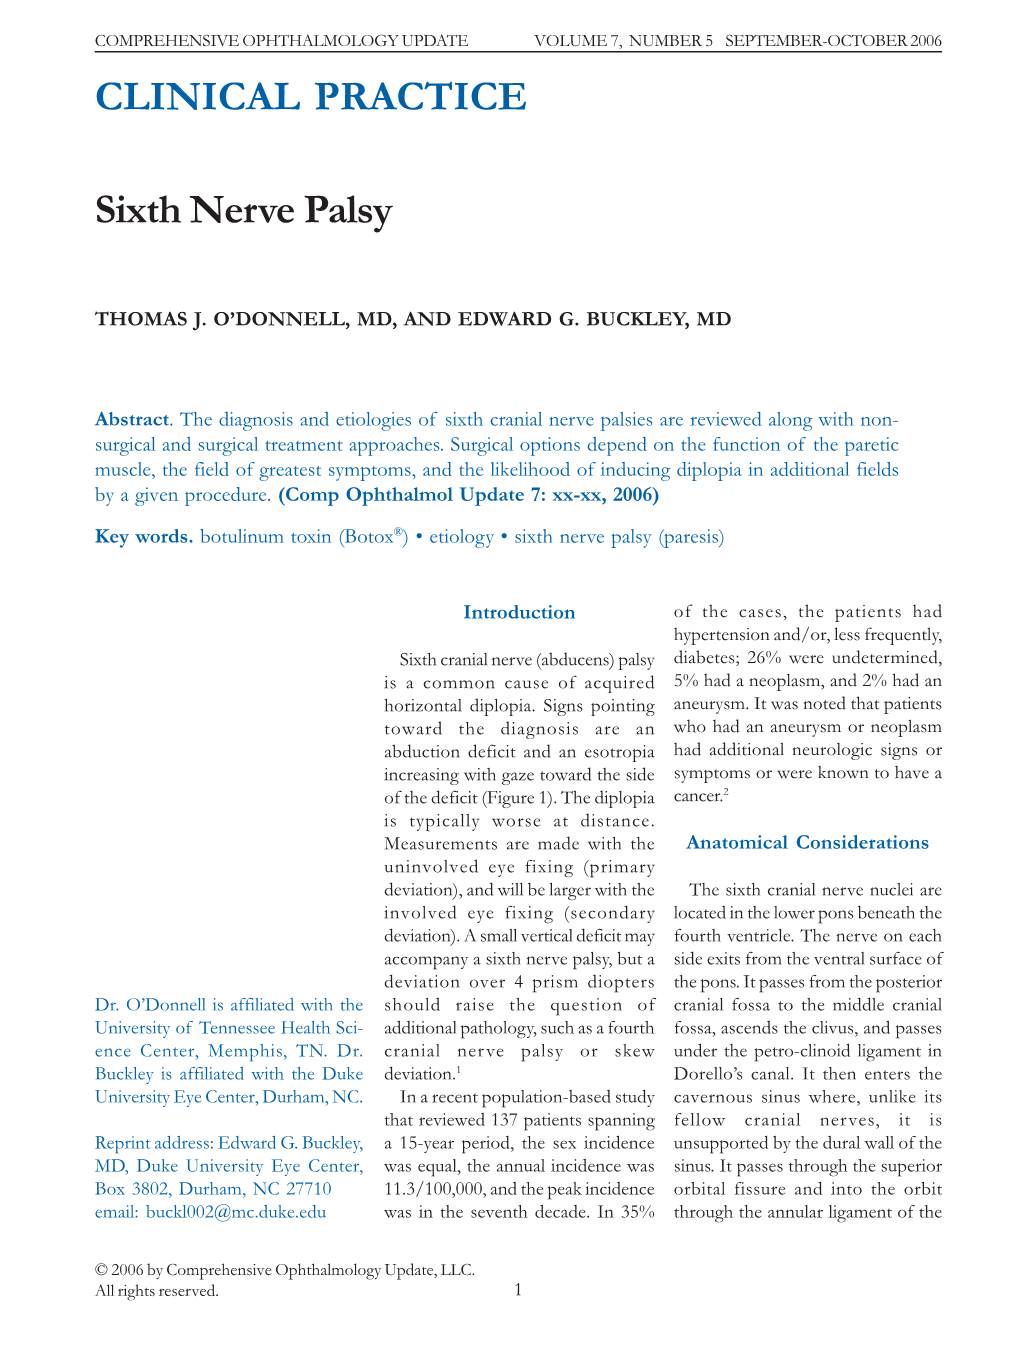 Sixth Nerve Palsy